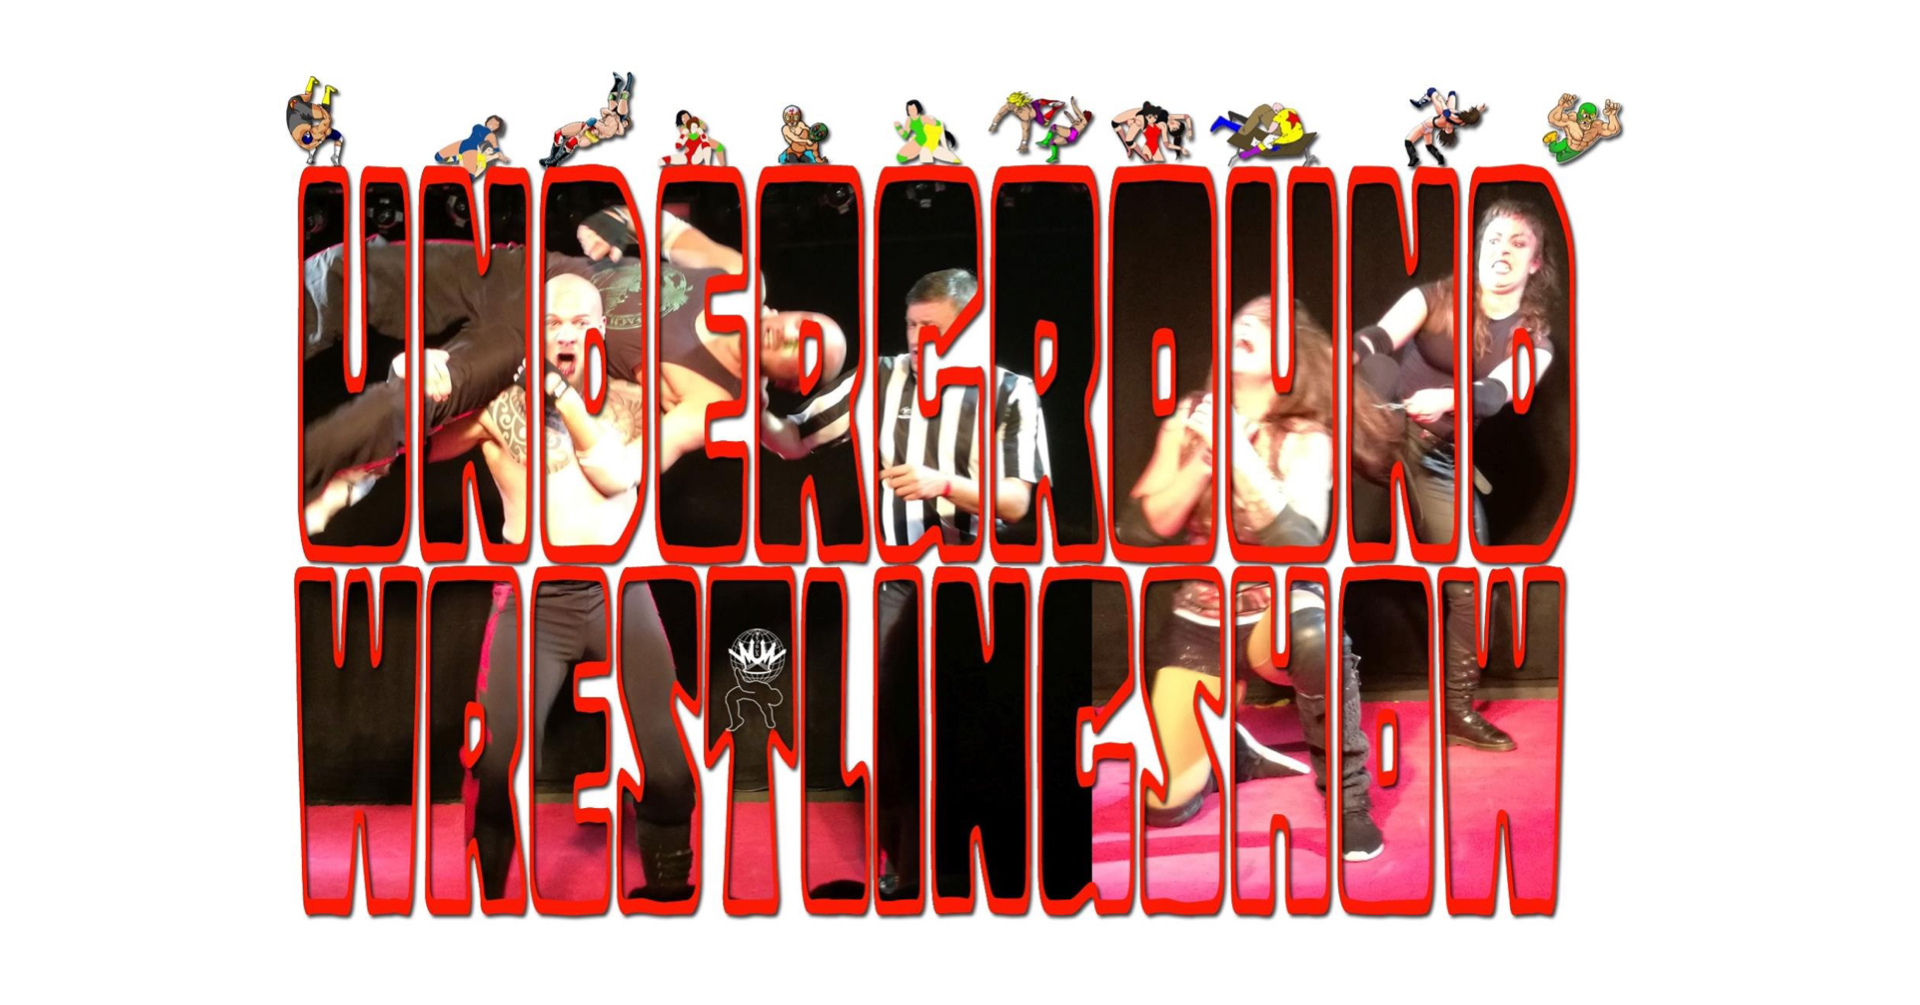 WUW Underground-Wrestling-Show am 1. March 2020 @ Weberknecht.